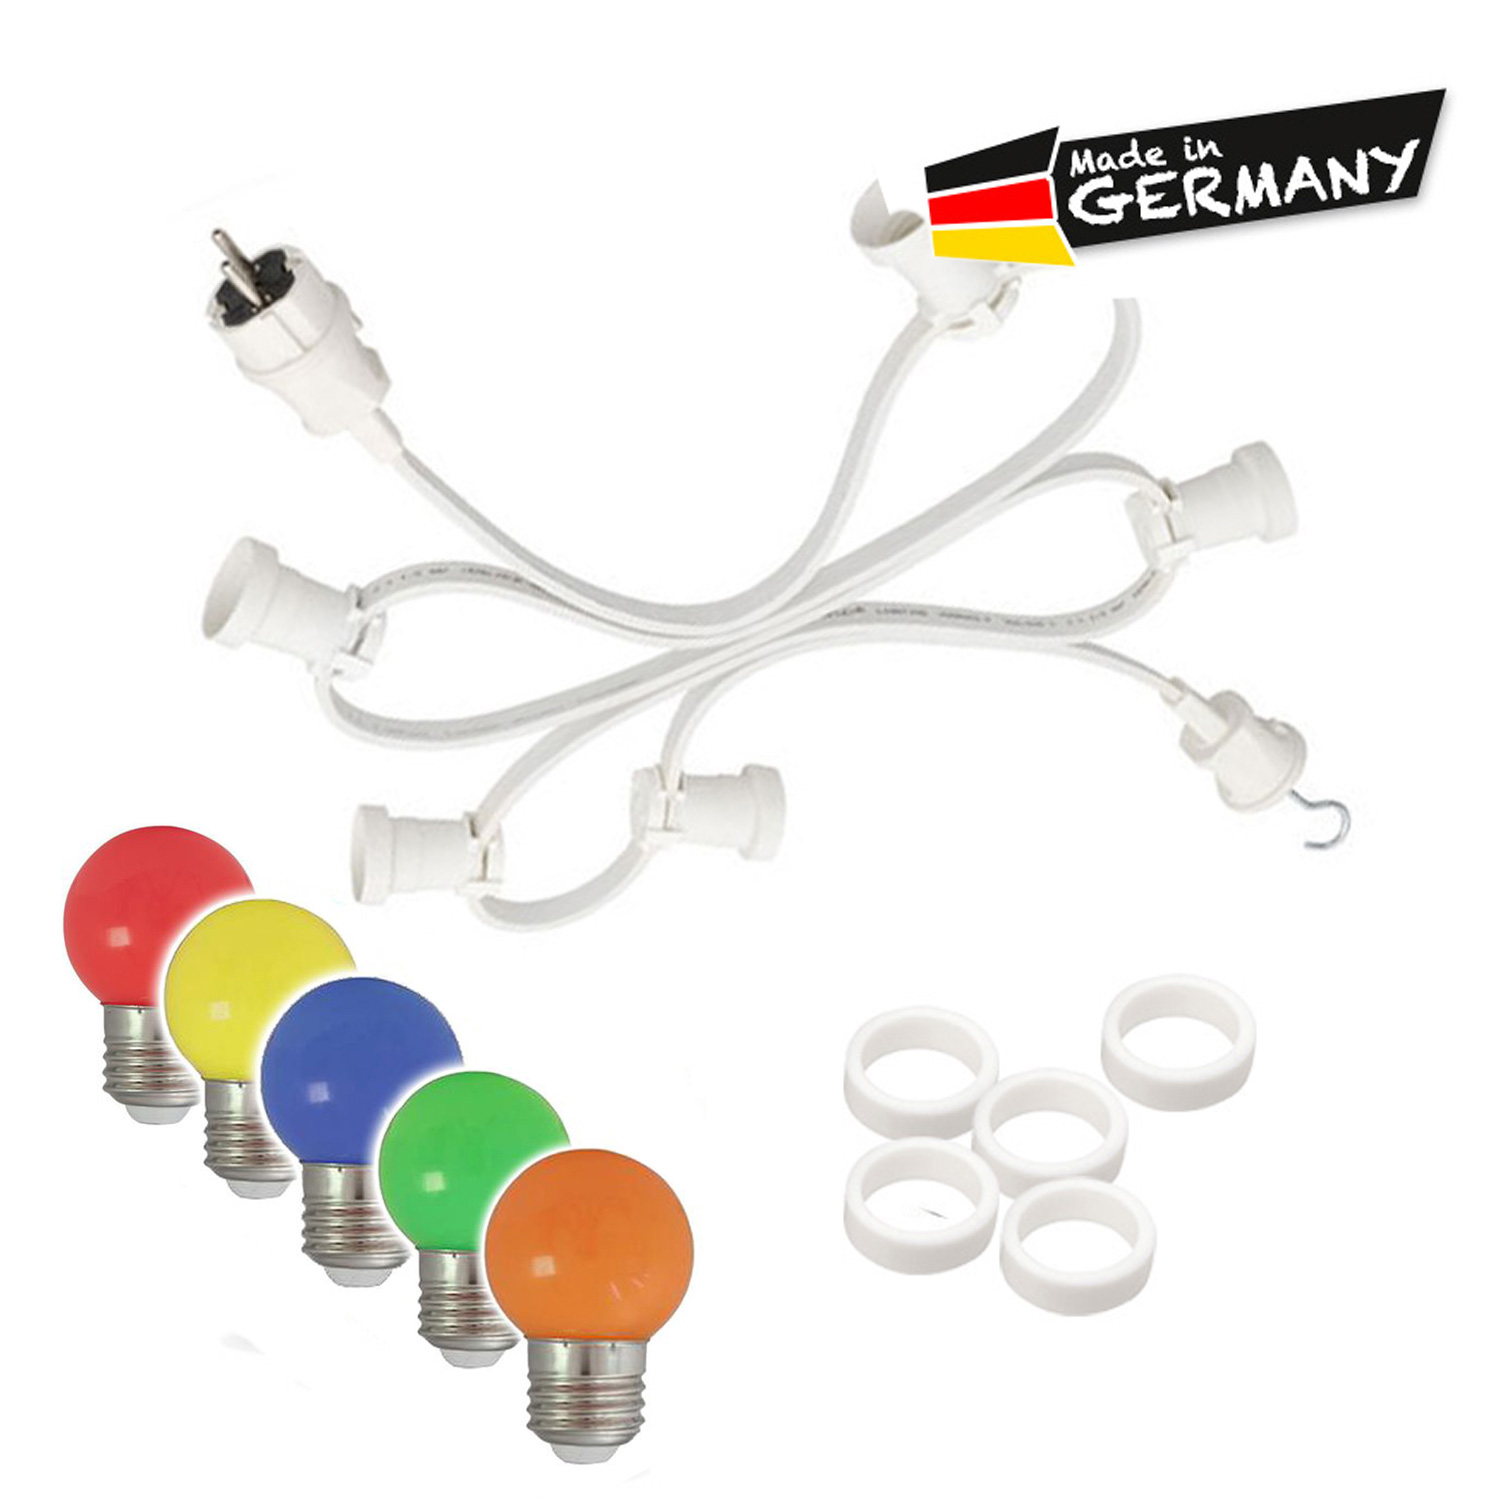 Illu-/Partylichterkette 40m - Außenlichterkette weiß - Made in Germany - 40 x bunte LED Kugellampen